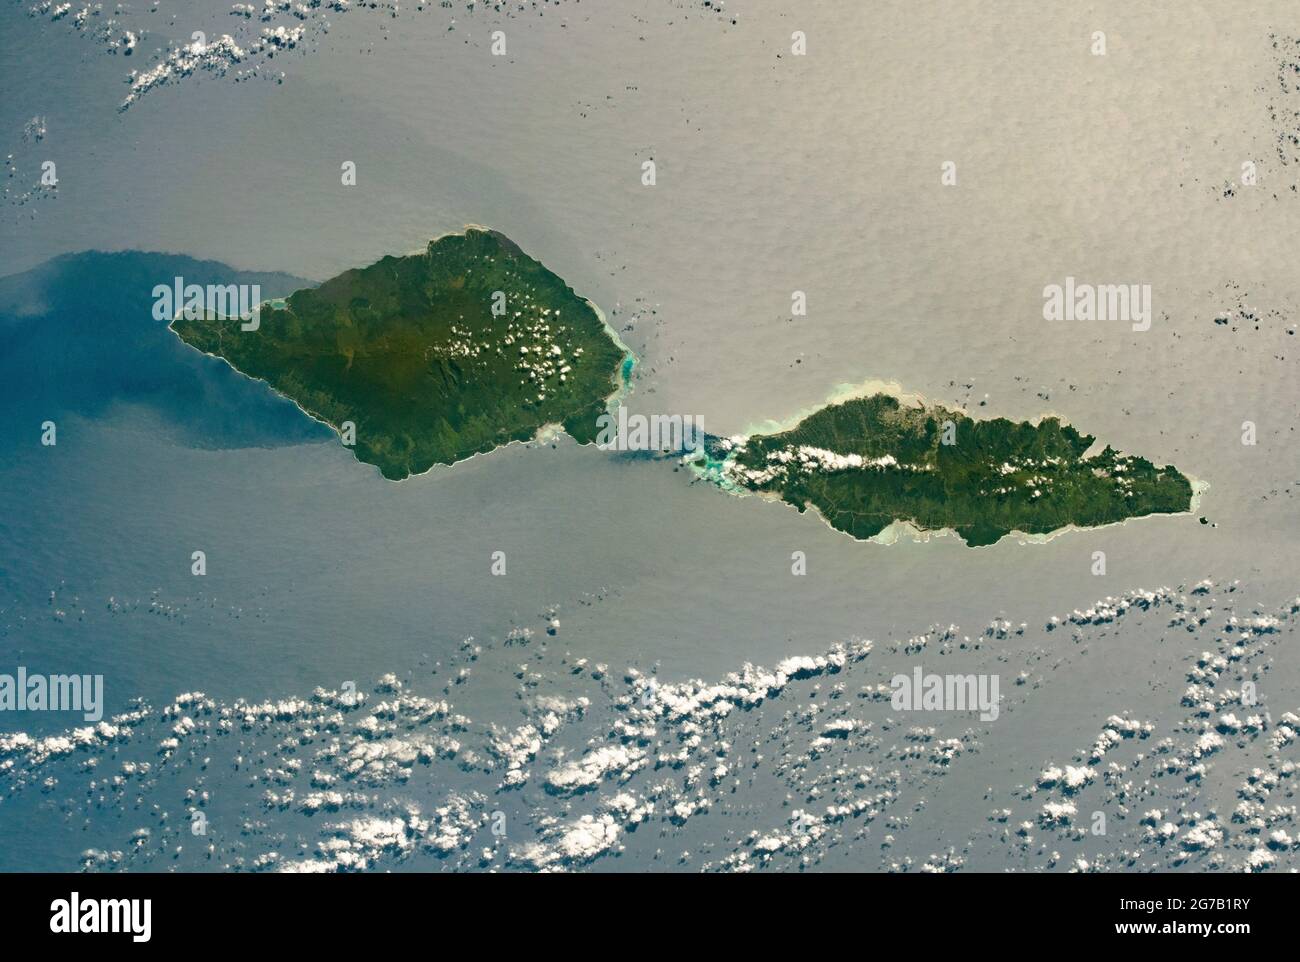 Savai'i et Upolu, Samoa, photographiés à partir de la Station spatiale internationale au cours de son passage au-dessus de l'océan Pacifique Sud. Savai'i, l'île de Samoan la plus à l'ouest, fait 80 km (50 mi) de long; Upolu est presque aussi longue (74 km/46 mi). Les centres vert foncé des îles reflètent les forêts tropicales plus denses et les élévations plus élevées par rapport aux régions côtières plus basses et vert clair autour des bords. Le détroit d'Apolima sépare les 2 îles. Une version unique, optimisée et numériquement améliorée d'une NASA image / crédit NASA Banque D'Images